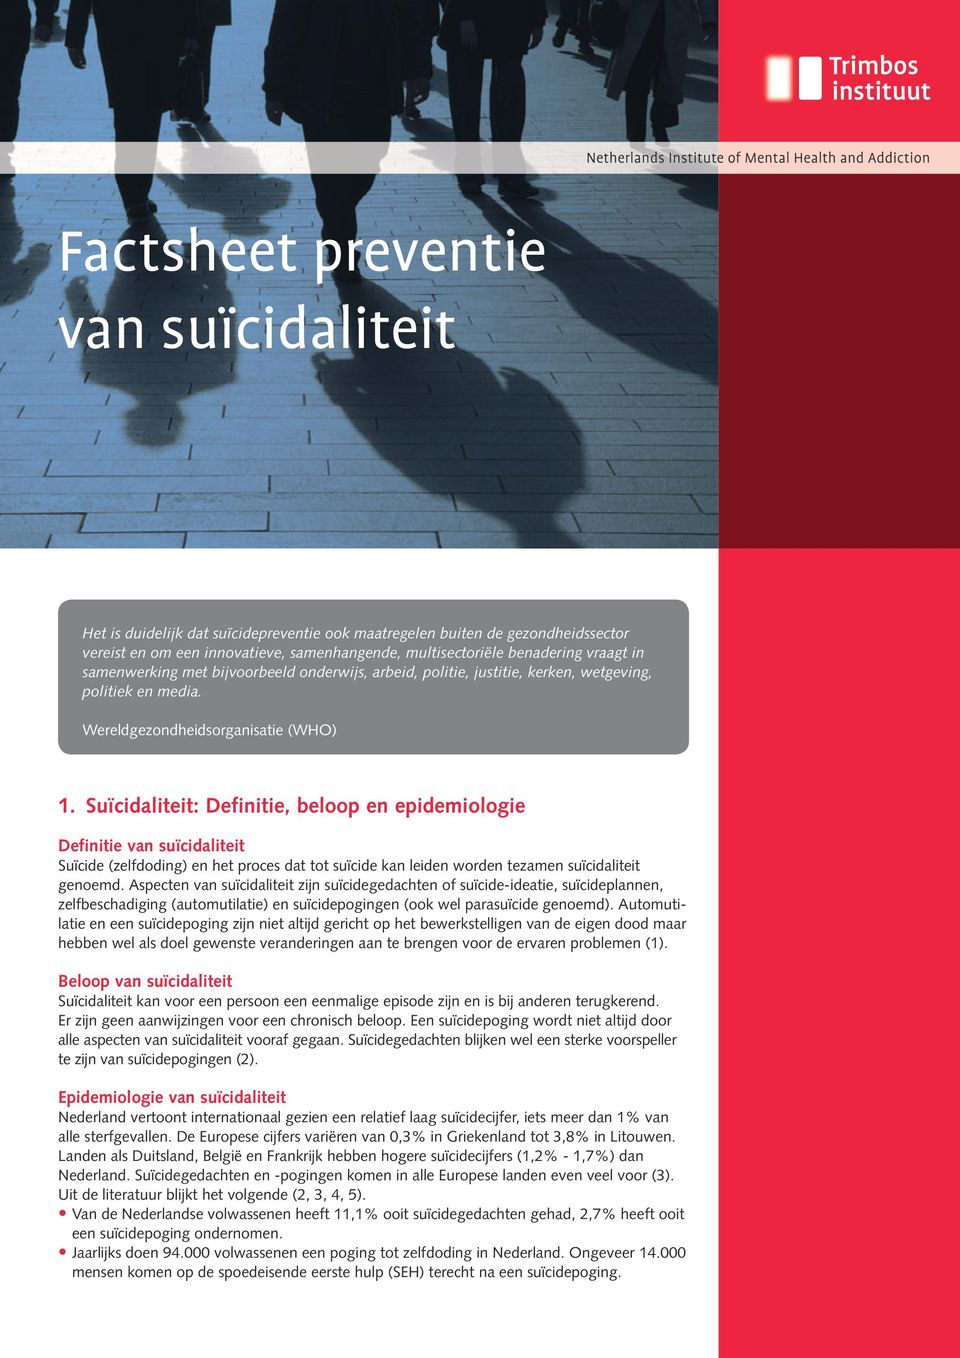 Suïcidaliteit: Definitie, beloop en epidemiologie Definitie van suïcidaliteit Suïcide (zelfdoding) en het proces dat tot suïcide kan leiden worden tezamen suïcidaliteit genoemd.